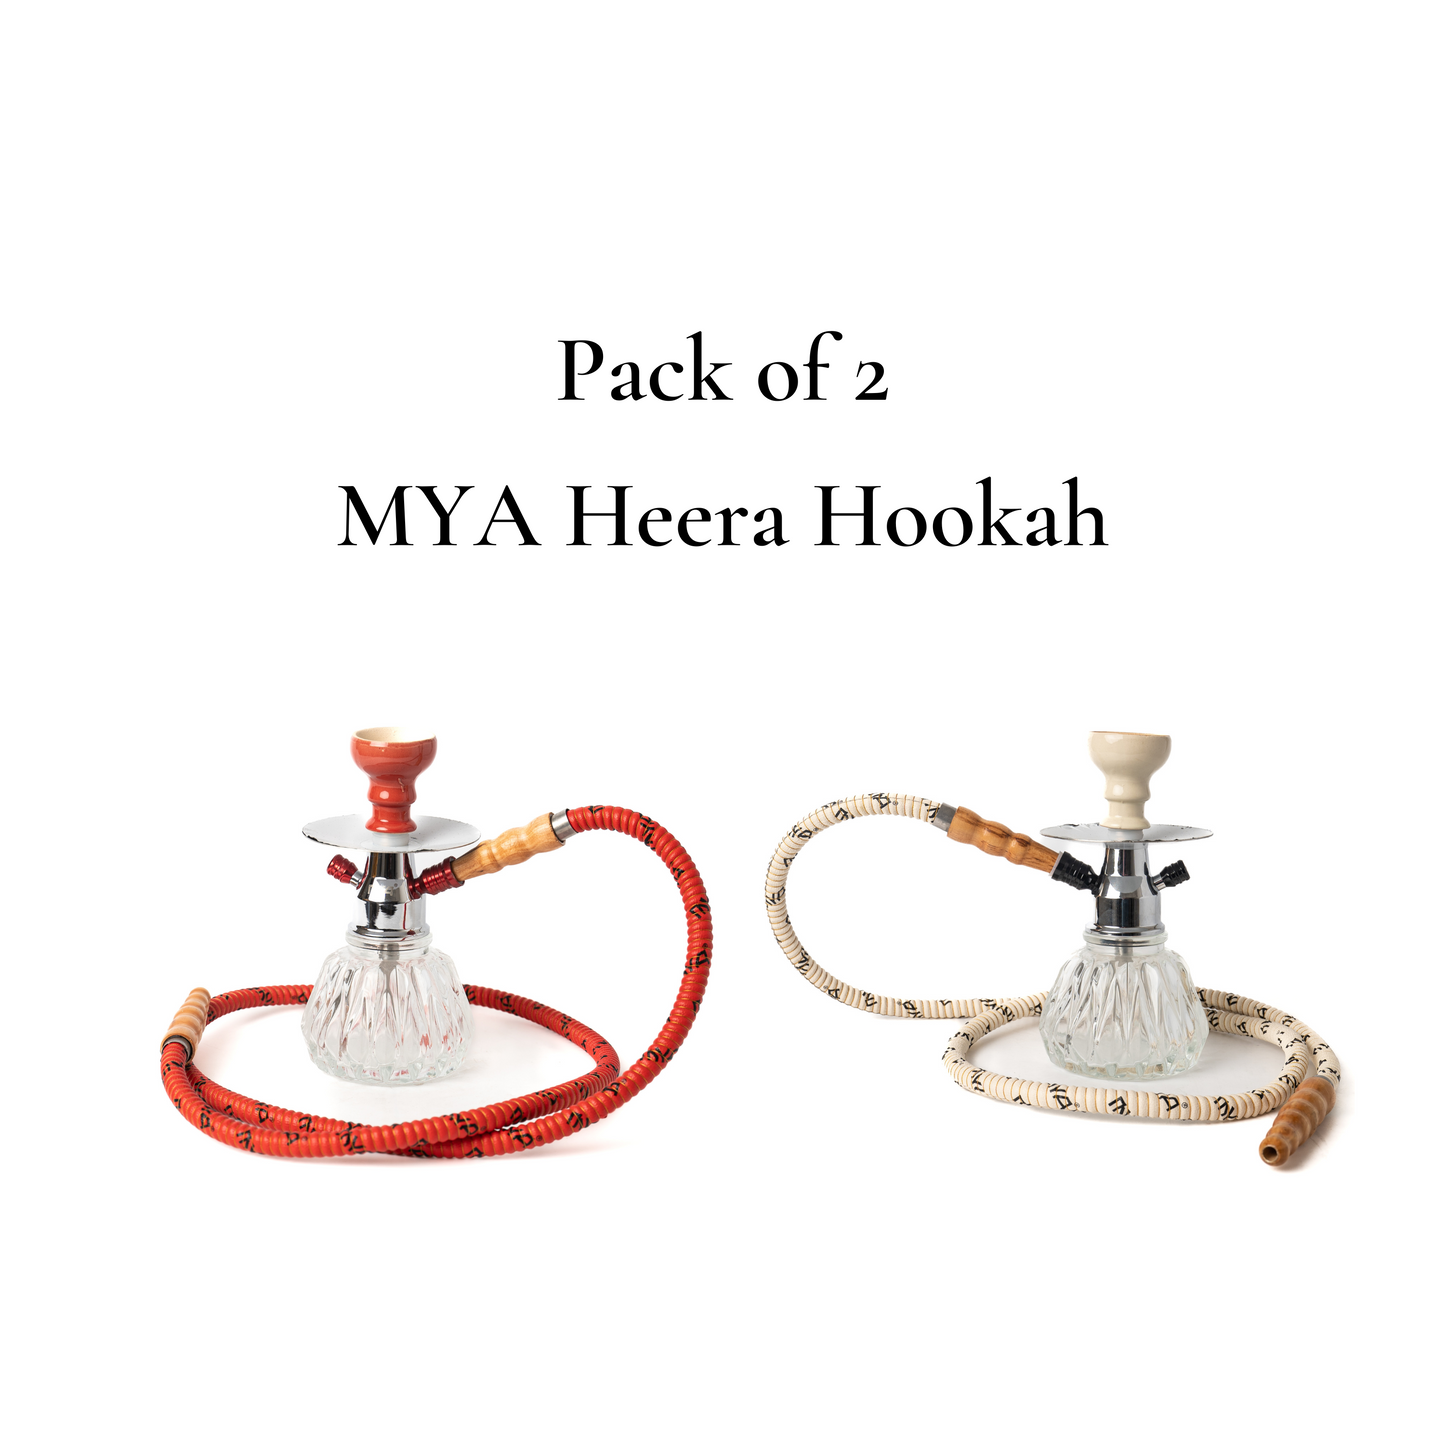 MYA Heera Hookah (Pack of 2)